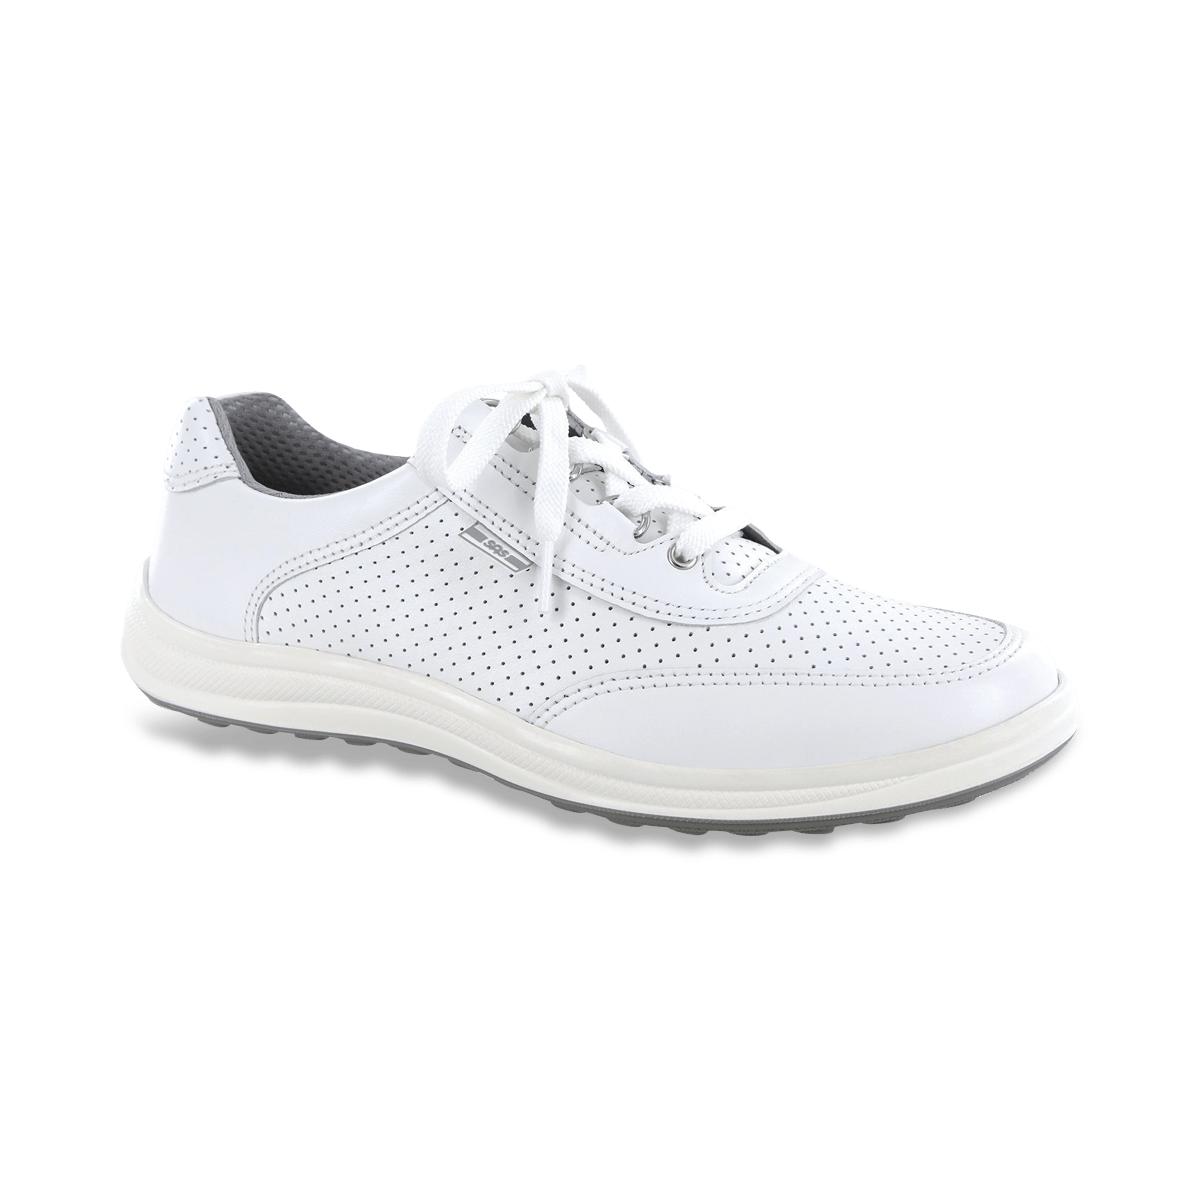 SAS Sporty Lux - Comfortable Tennis Shoes, SASNola